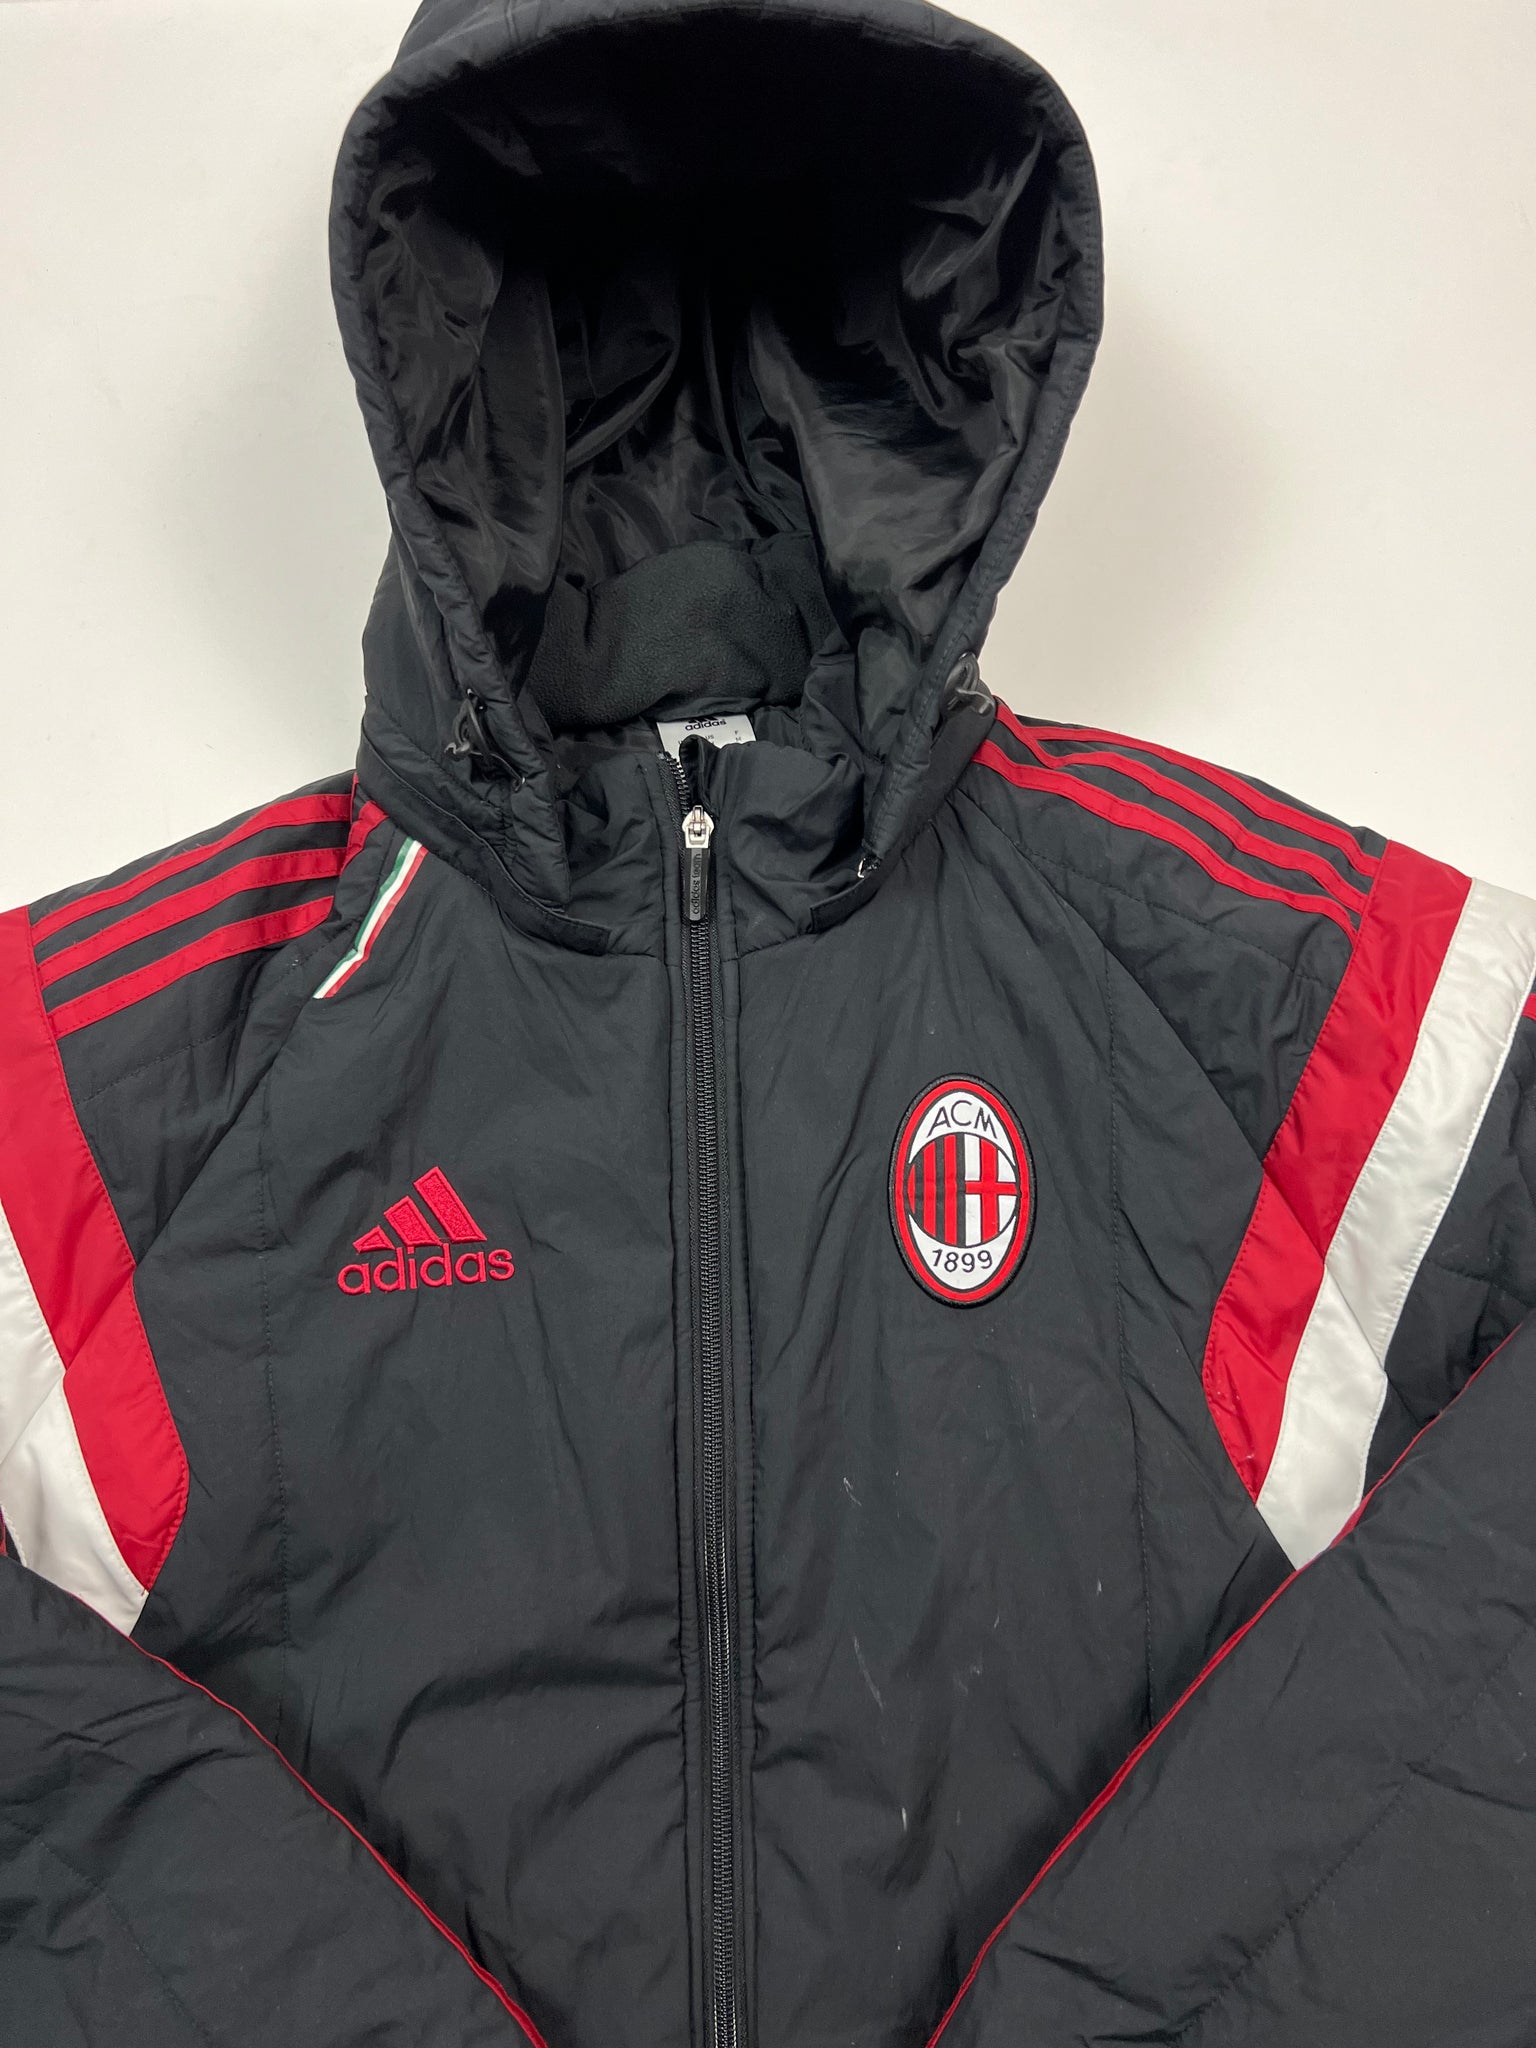 Adidas AC Milan Jacket (M)